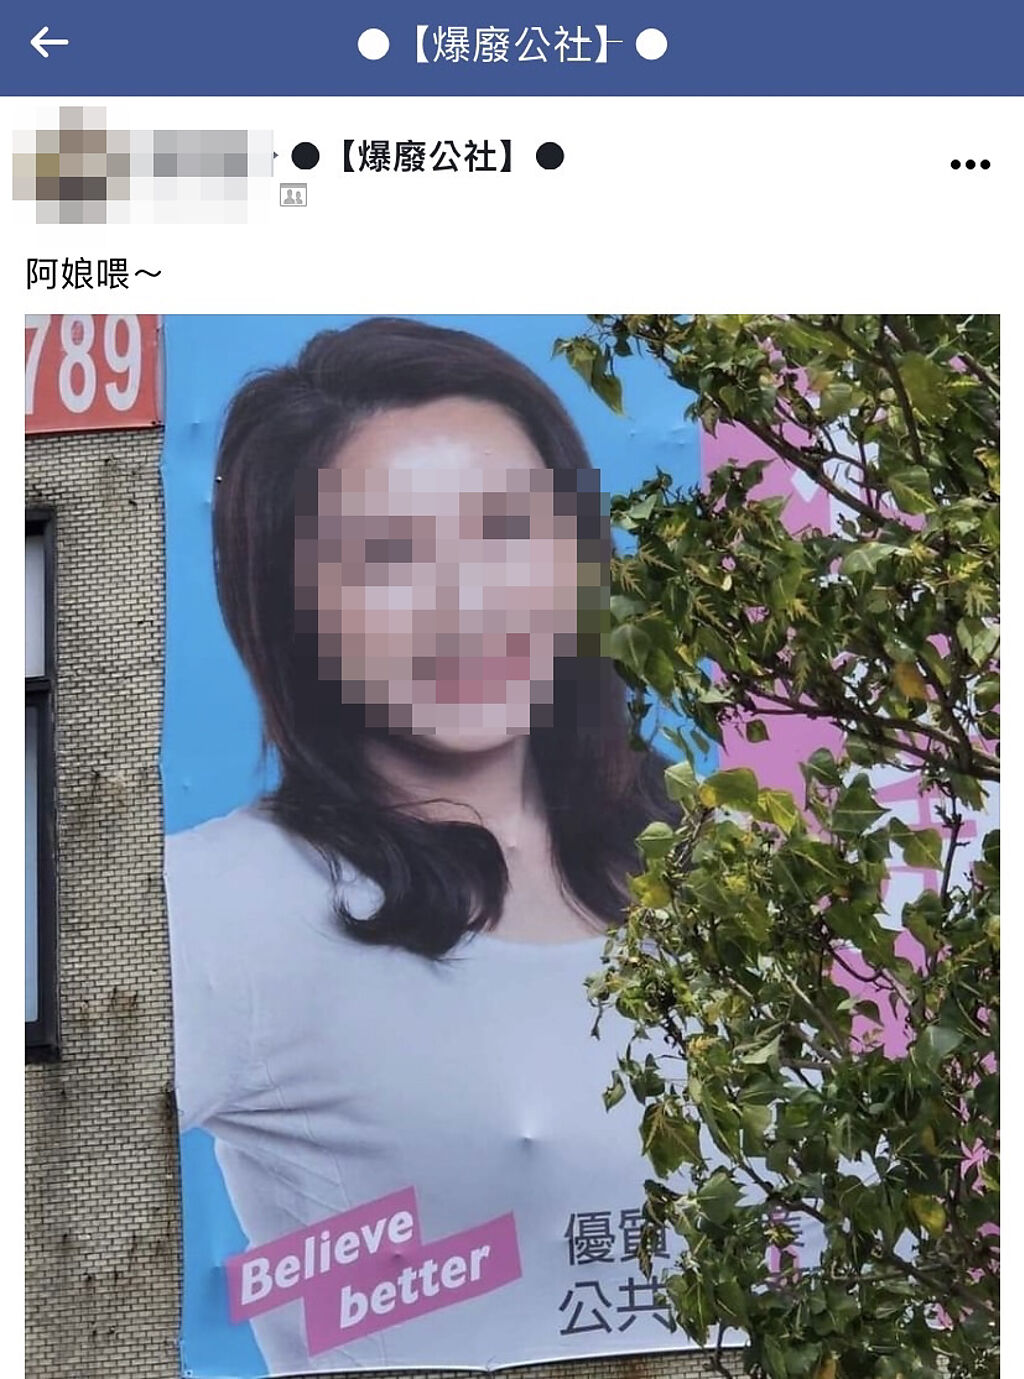 1名網友日前在路上發現某女性選舉候選人的廣告看板上，在胸部處有凸起物，疑似是布簾底下有物體造成激凸錯覺。（翻攝自臉書「爆廢公社」）